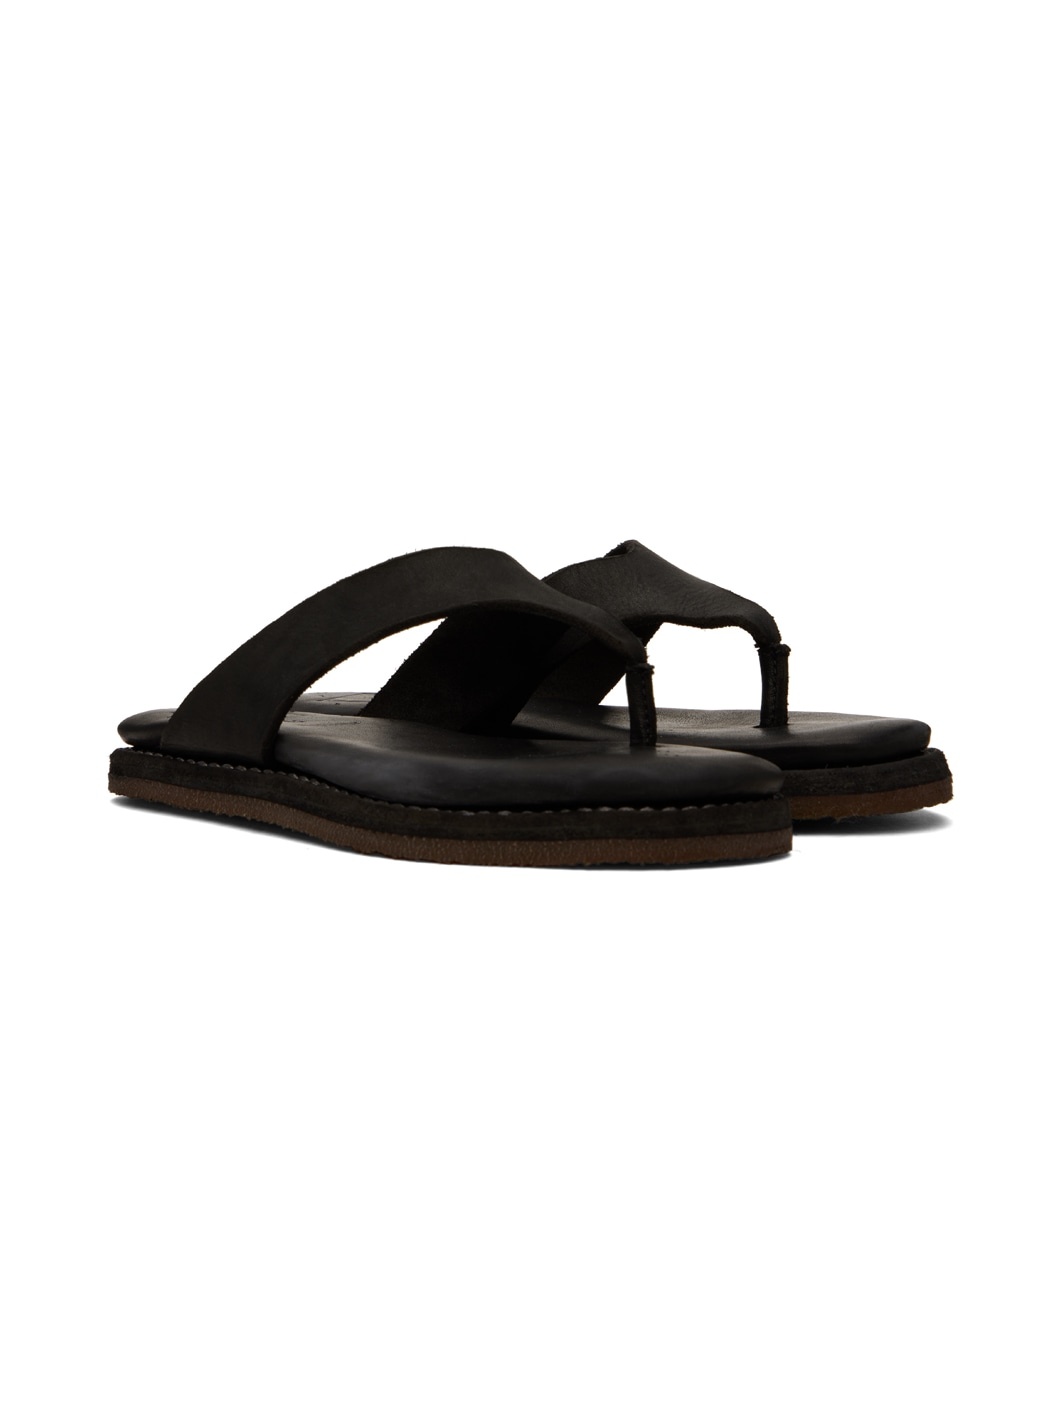 Black Leather Flip Flops - 4